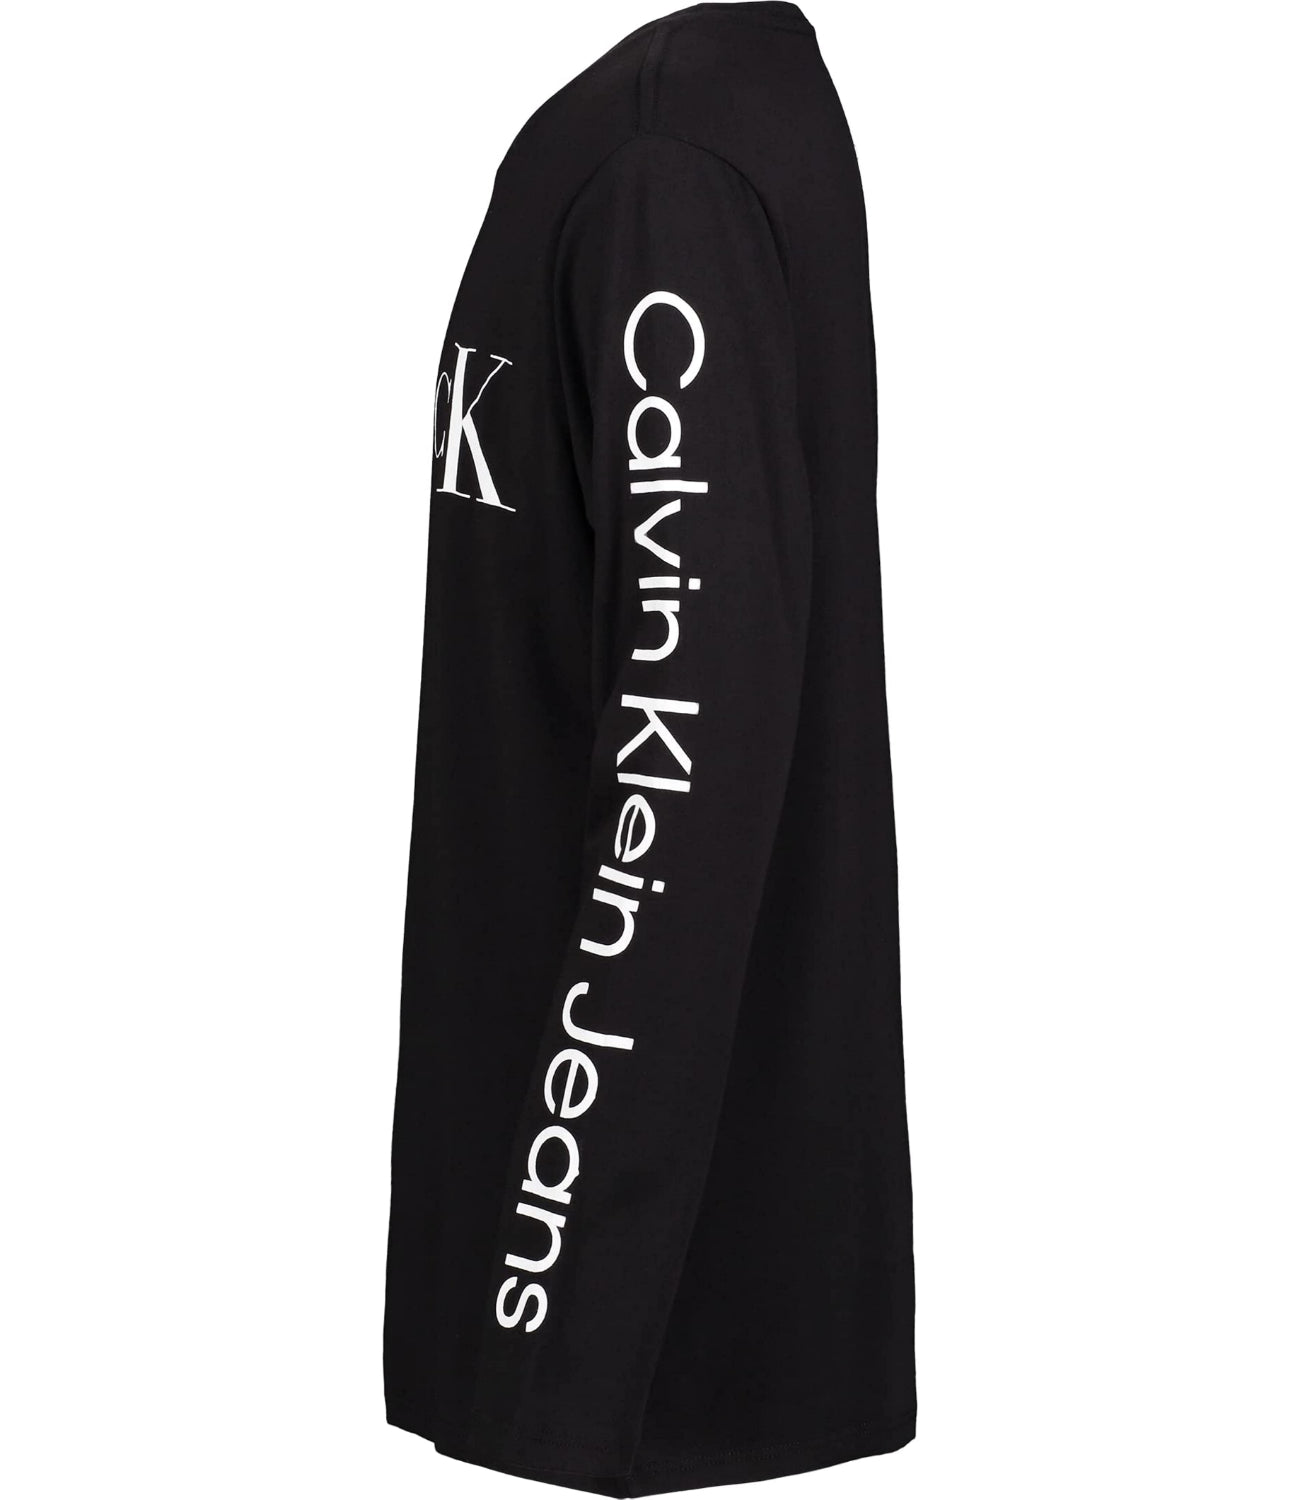 Calvin Klein Boys 4-7 Long Sleeve Logo T-shirt